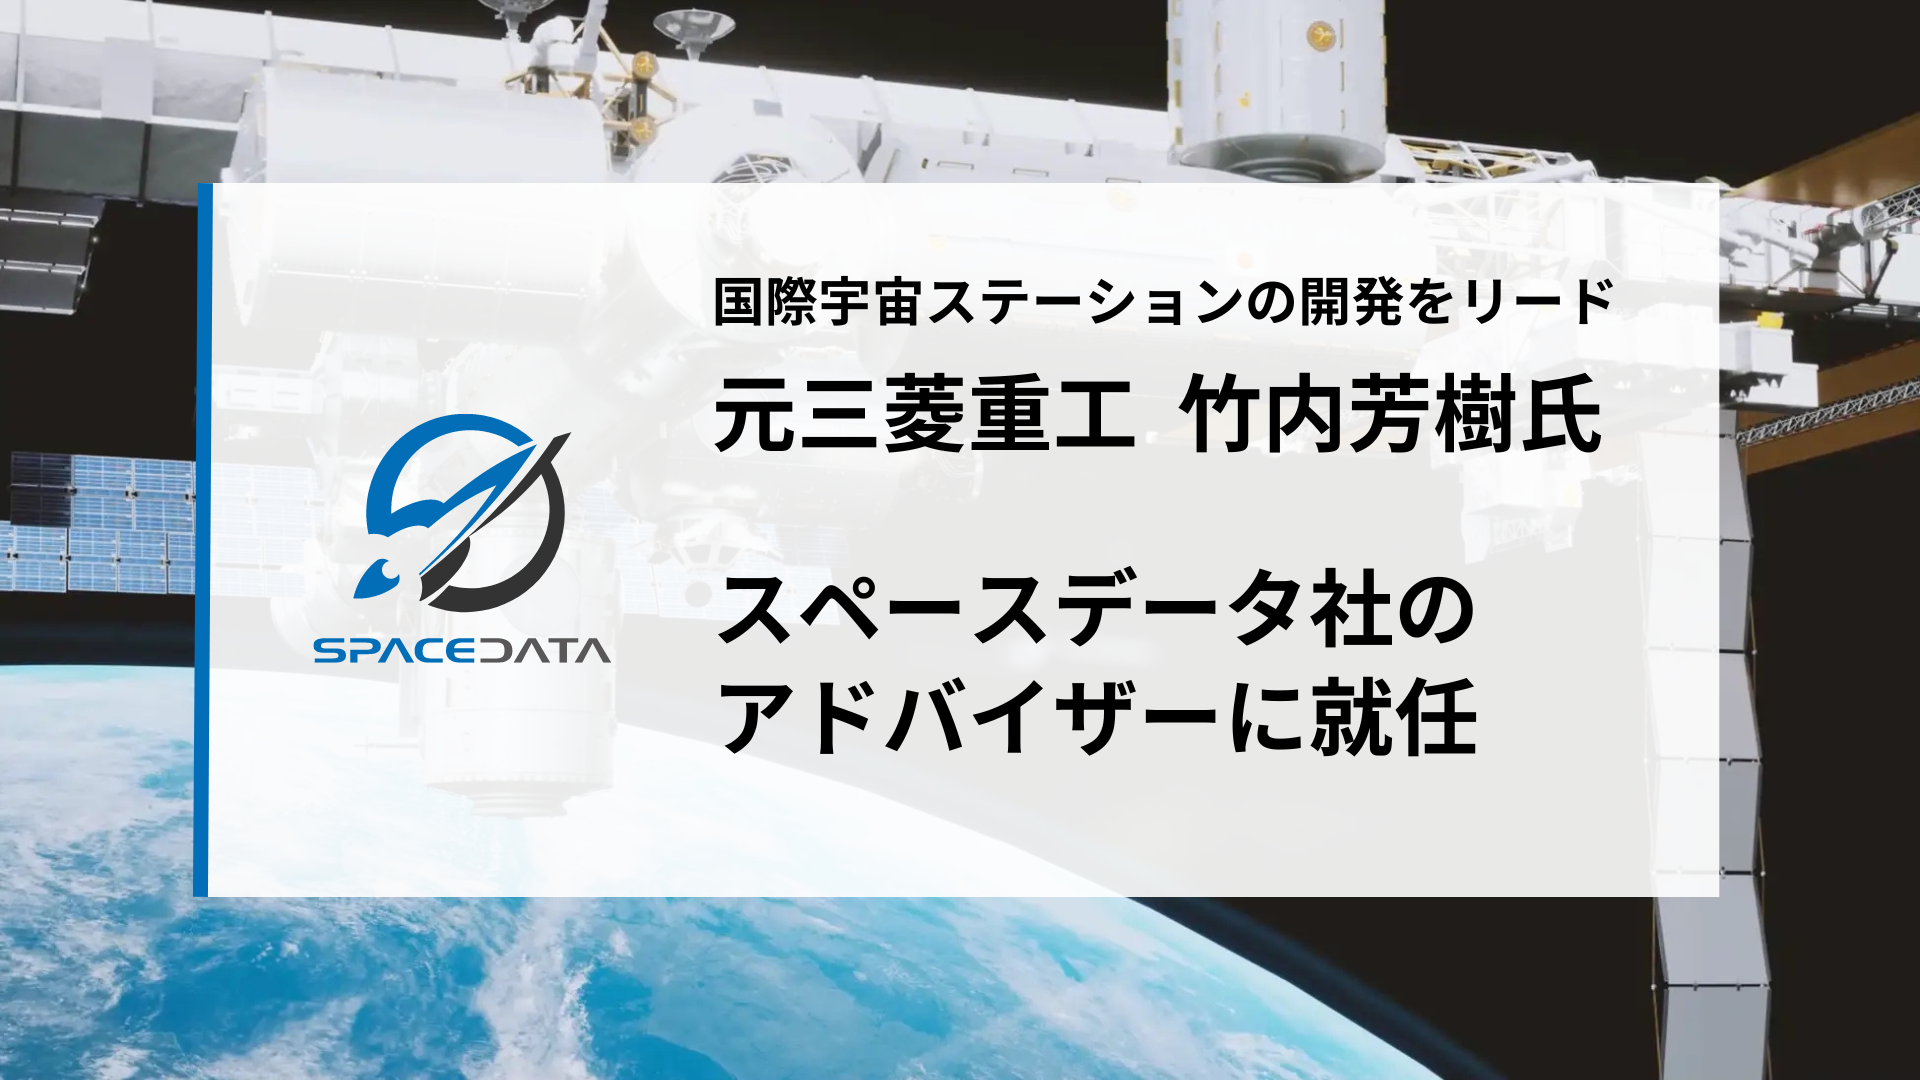 ISS「きぼう」日本実験棟のプロマネを務めた竹内芳樹氏、スペースデータのアドバイザーに就任